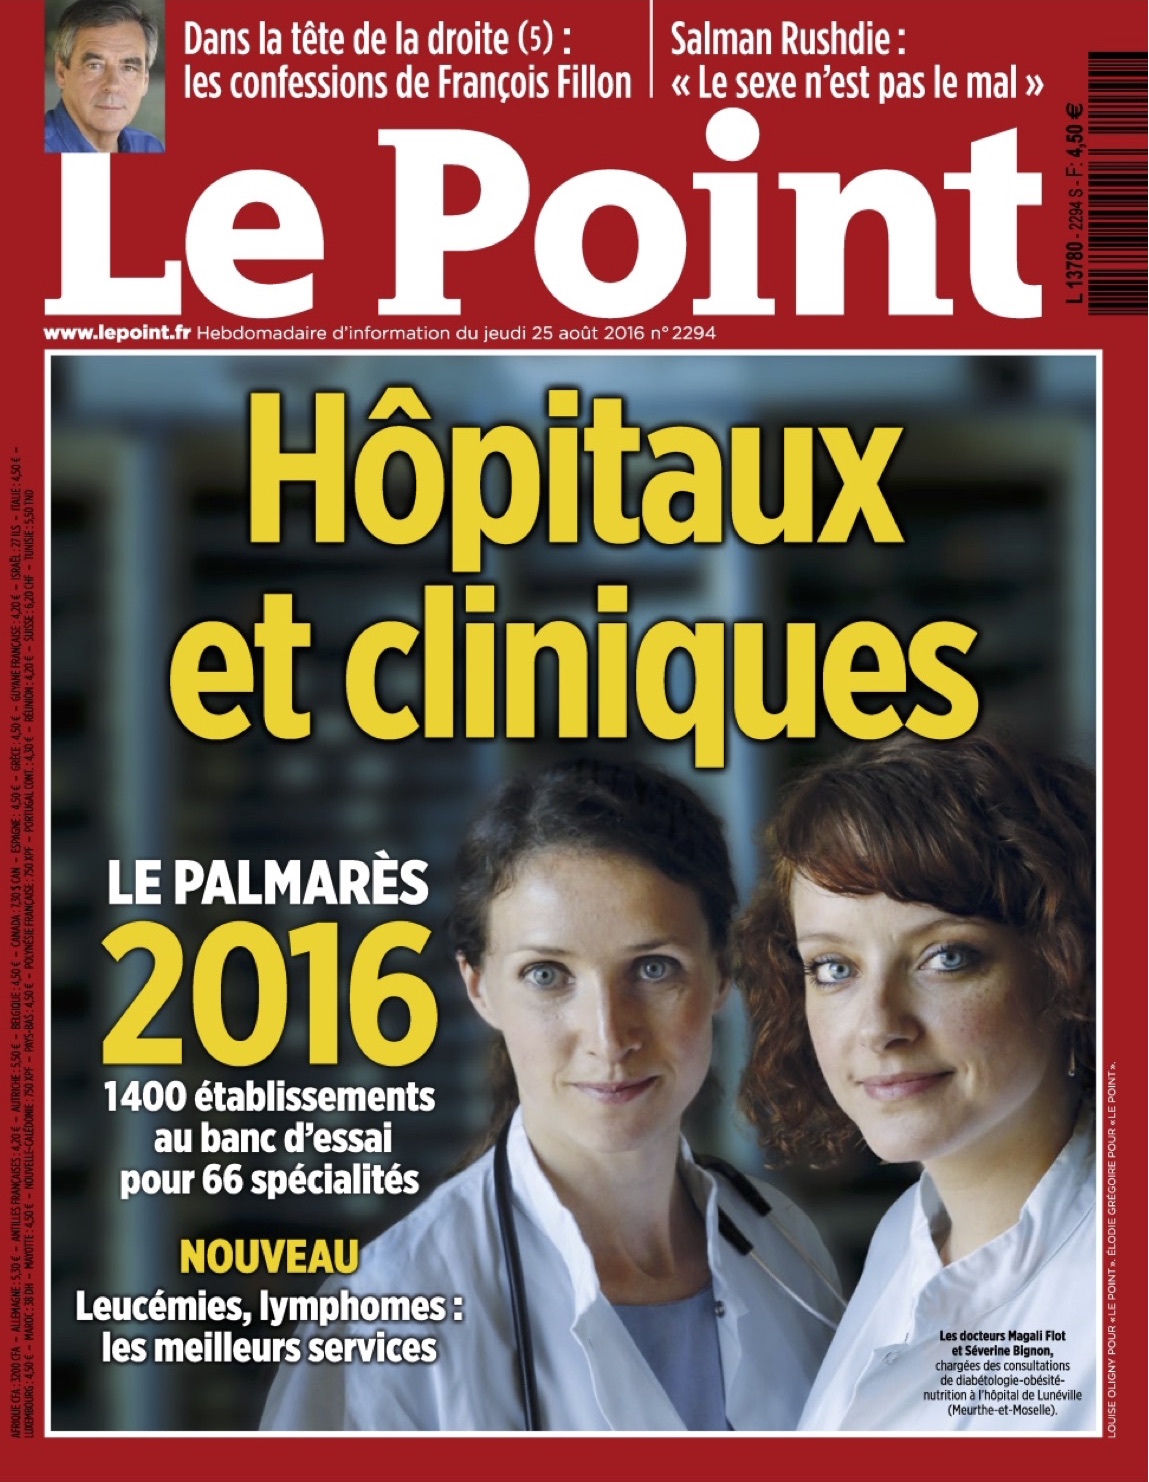 Le Point, Palmarès 2016, Classement, Chirurgie, Pied, Cheville, Hallux Valgus, Prothèse de cheville